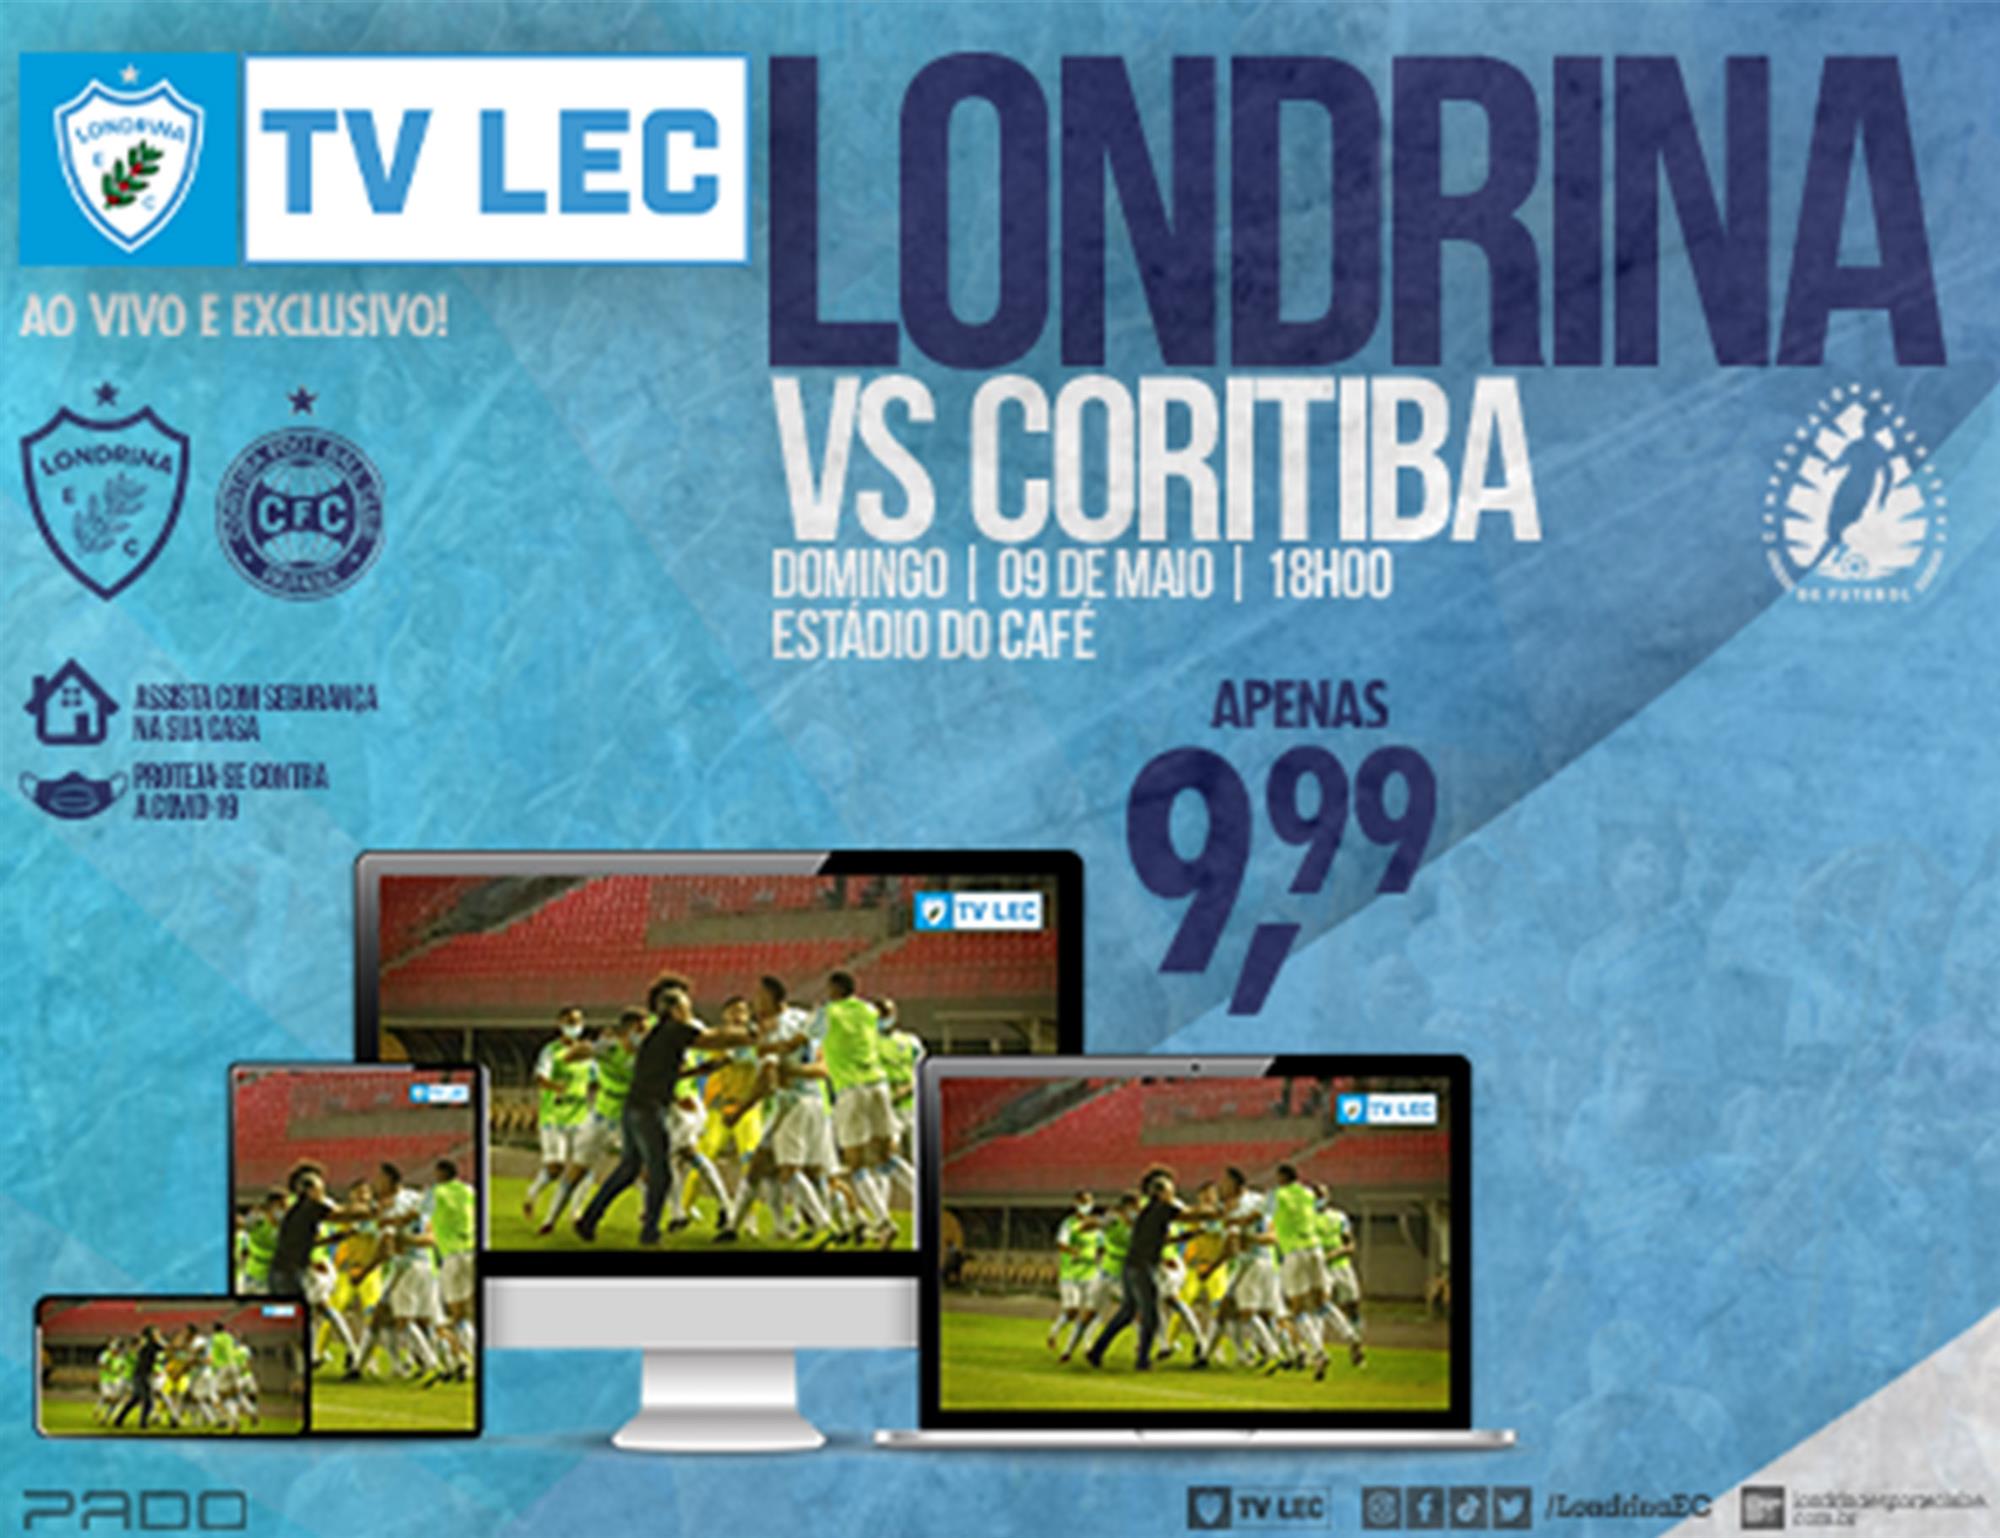 Assista ao jogo Londrina x Coritiba ao vivo pela TV LEC! Apenas R$ 9,99